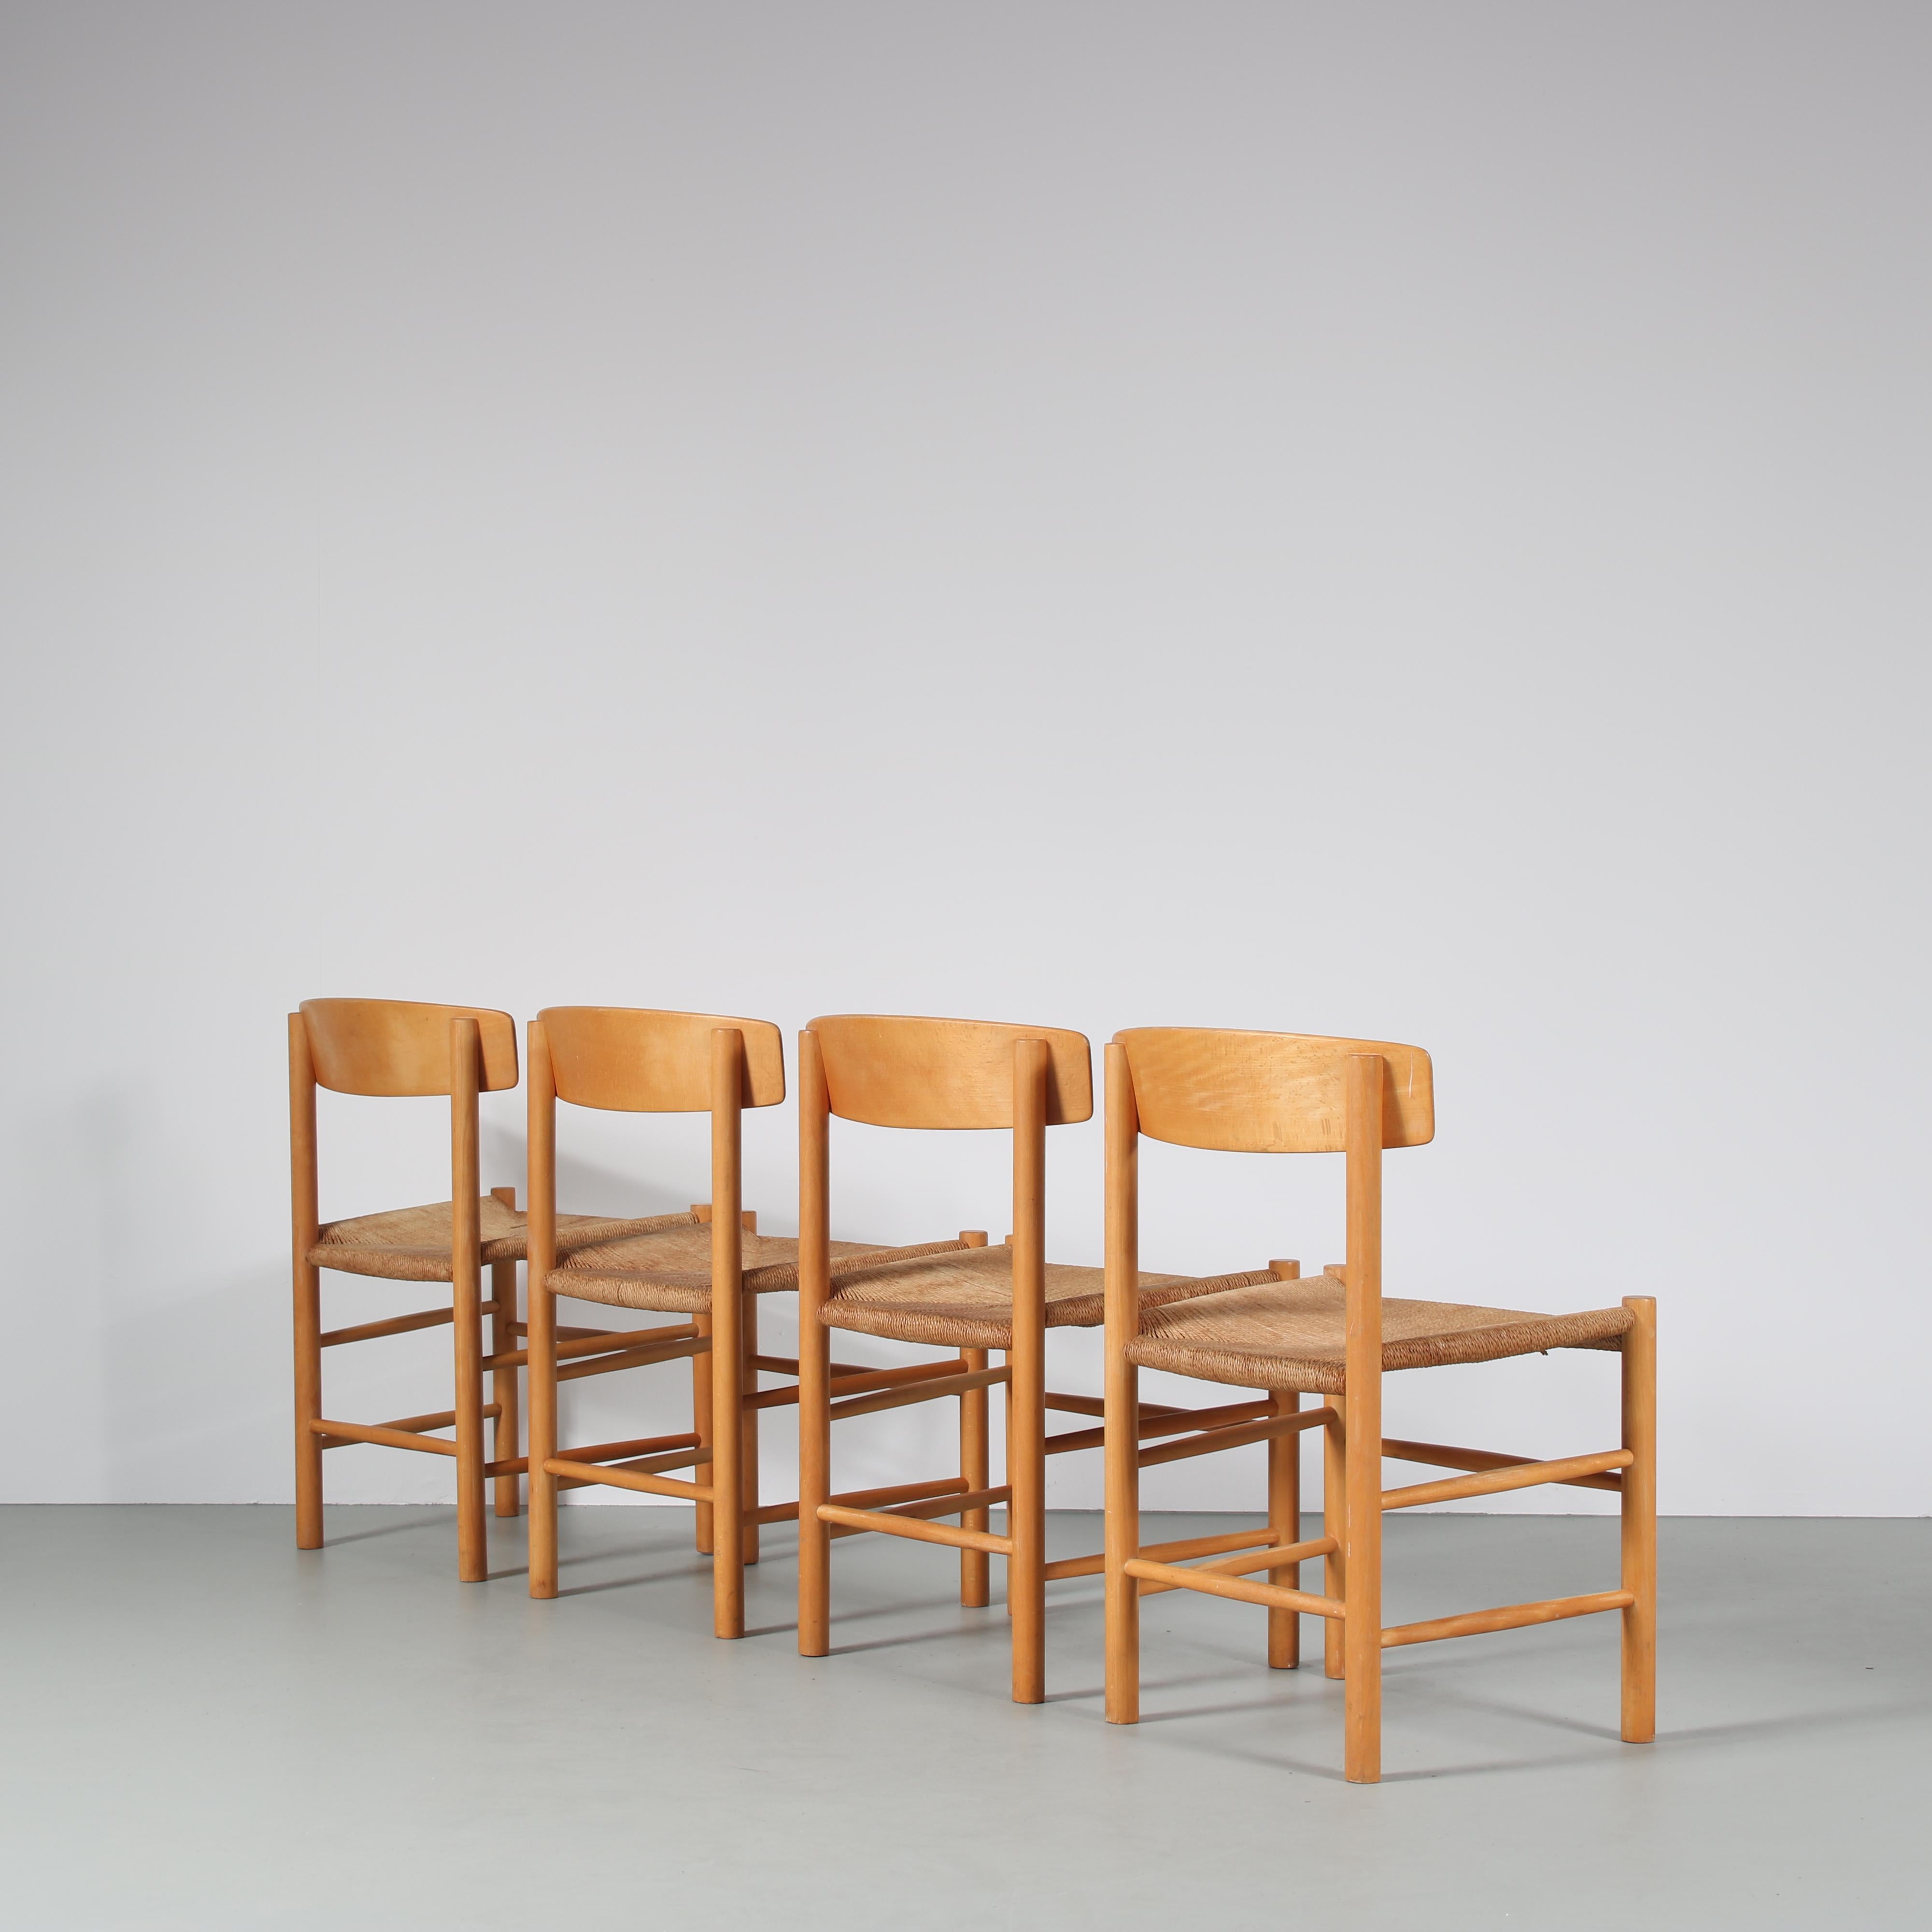 Scandinavian Modern “Shaker” Dining Chairs by Borge Mogensen for FDB Mobler, Denmark, 1960